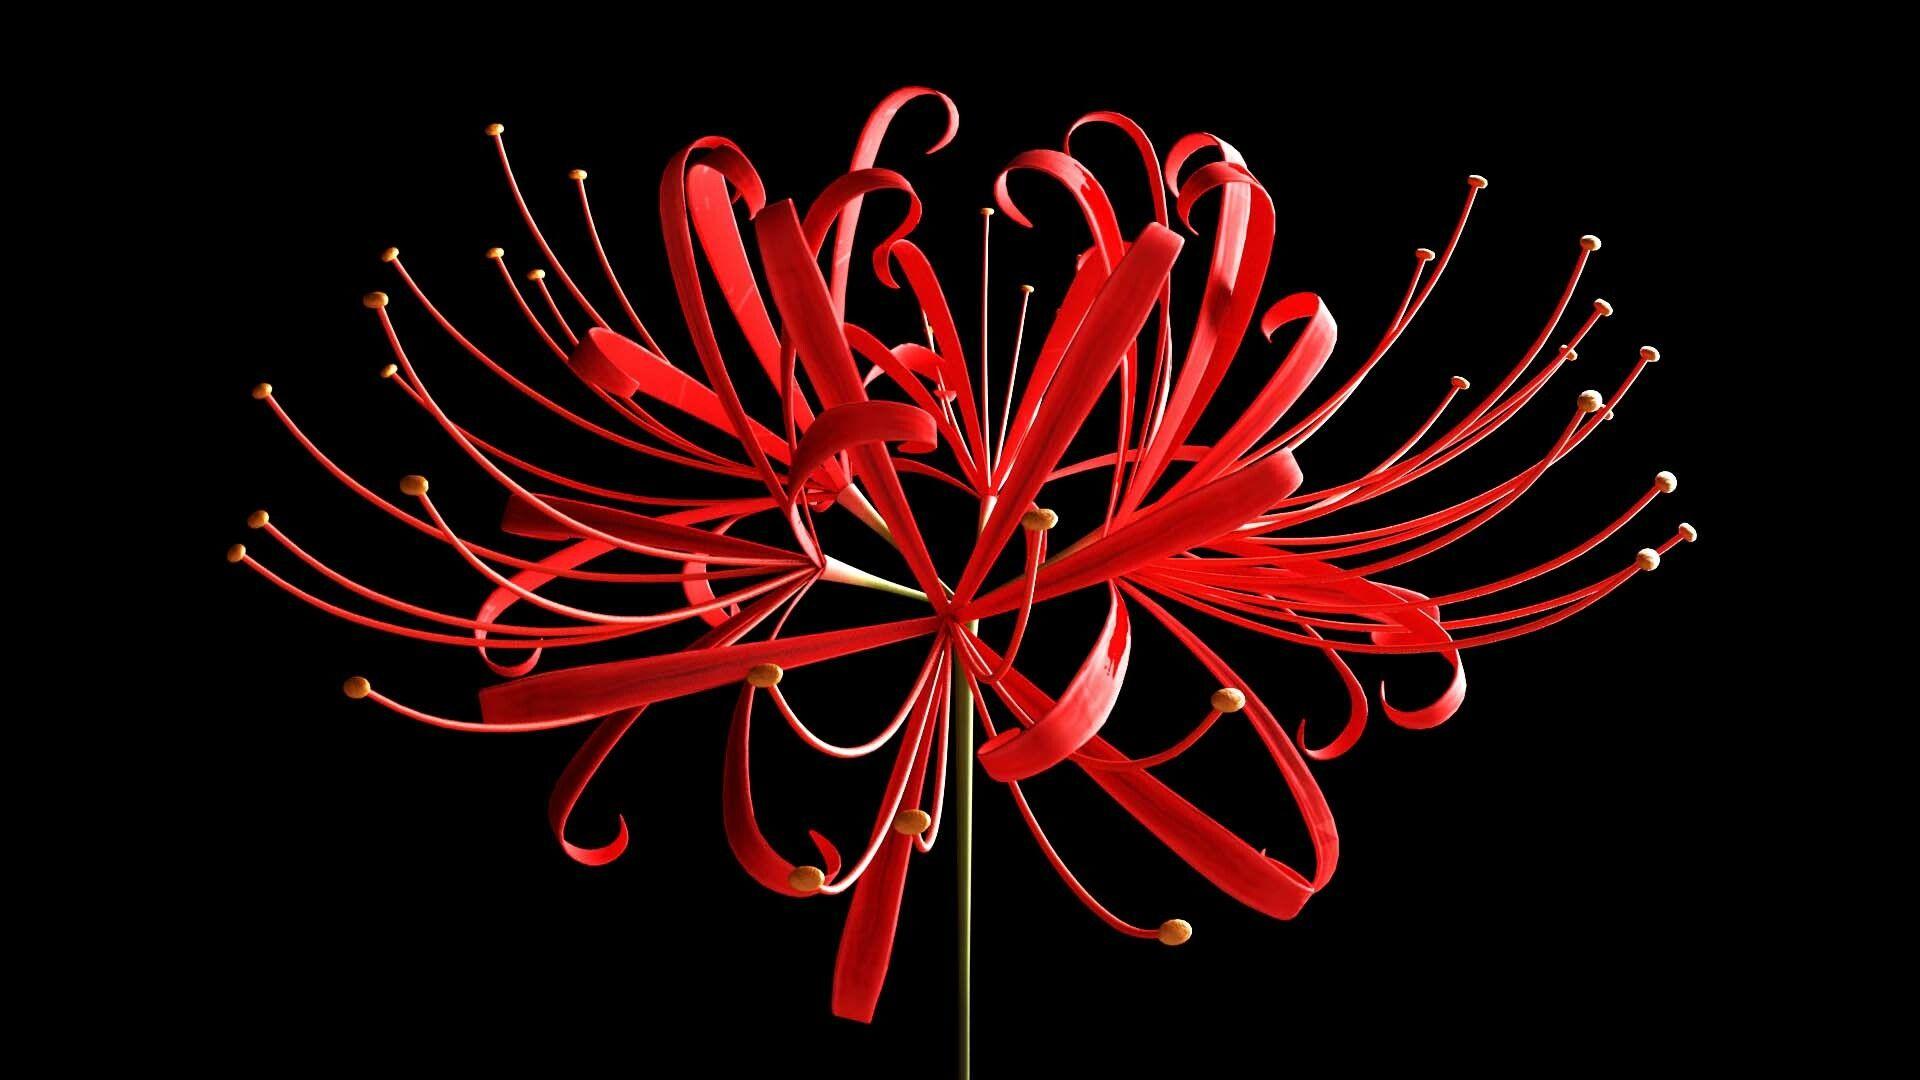 Red Spider Lily by dreamydark on DeviantArt